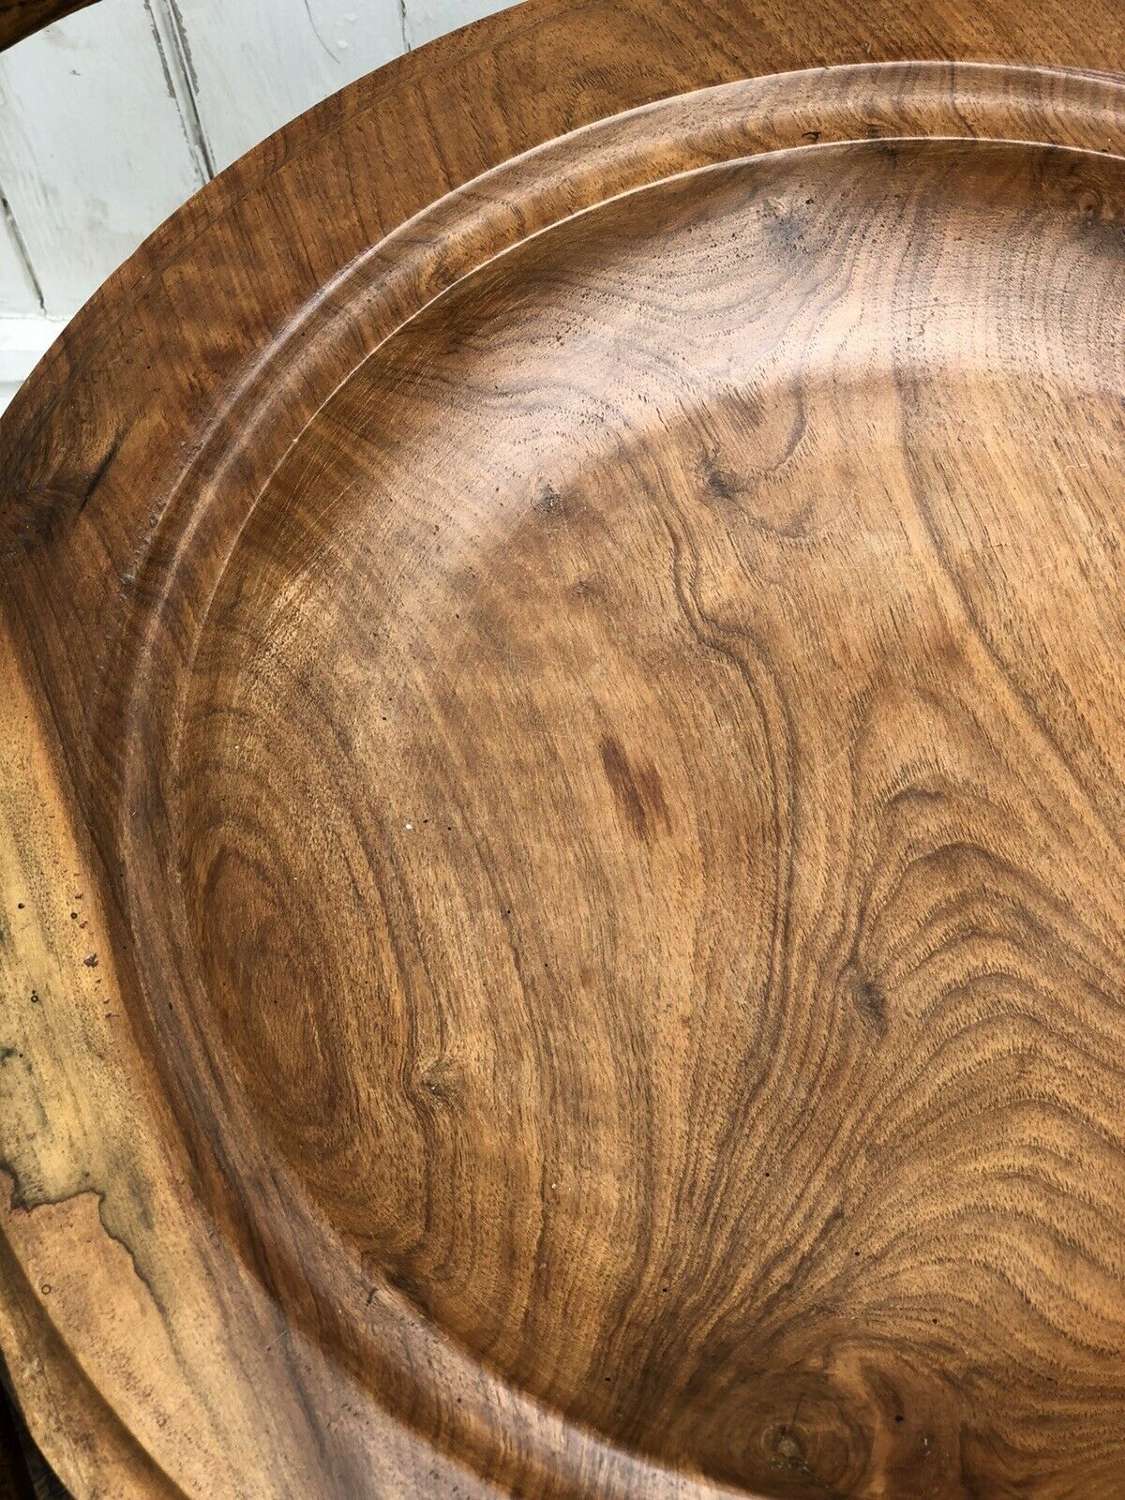 Large wooden platter